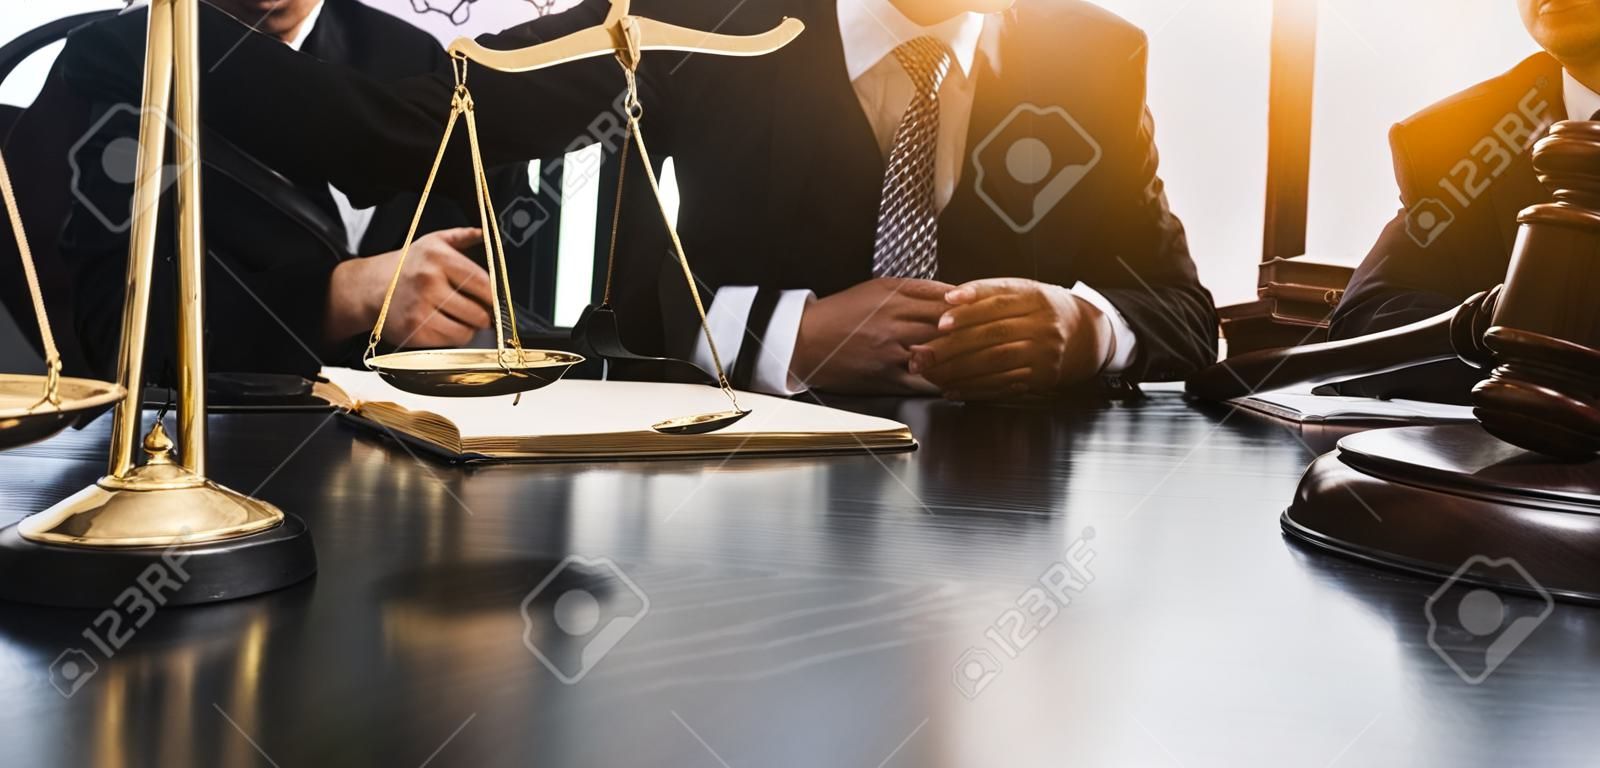 conceito de justiça e direito.Juiz masculino em um tribunal na mesa de madeira e conselheiro ou advogado masculino trabalhando no escritório. Direito jurídico, aconselhamento e conceito de justiça.